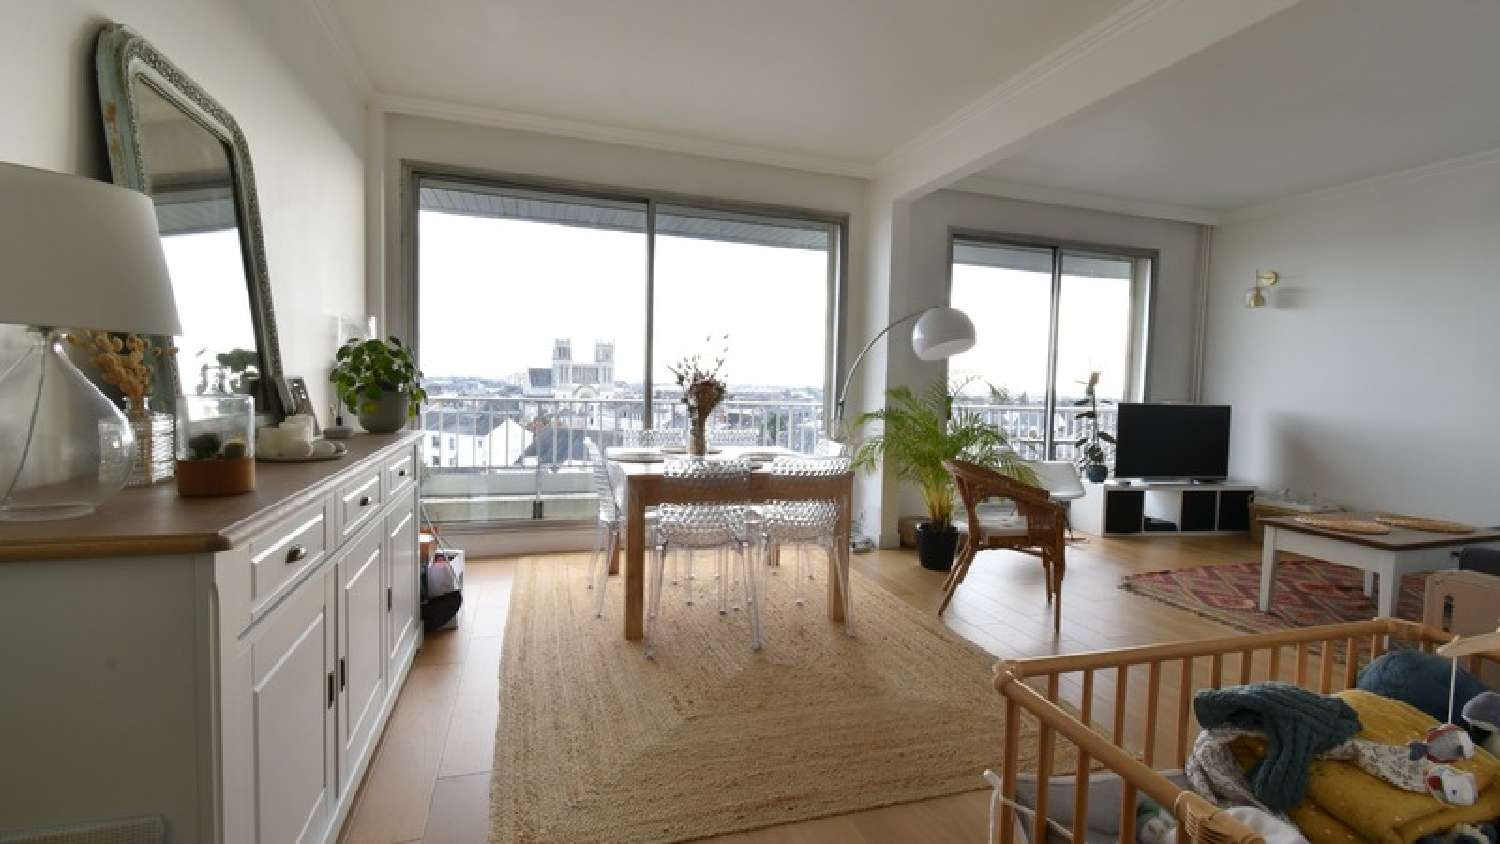  for sale apartment Angers 49100 Maine-et-Loire 4